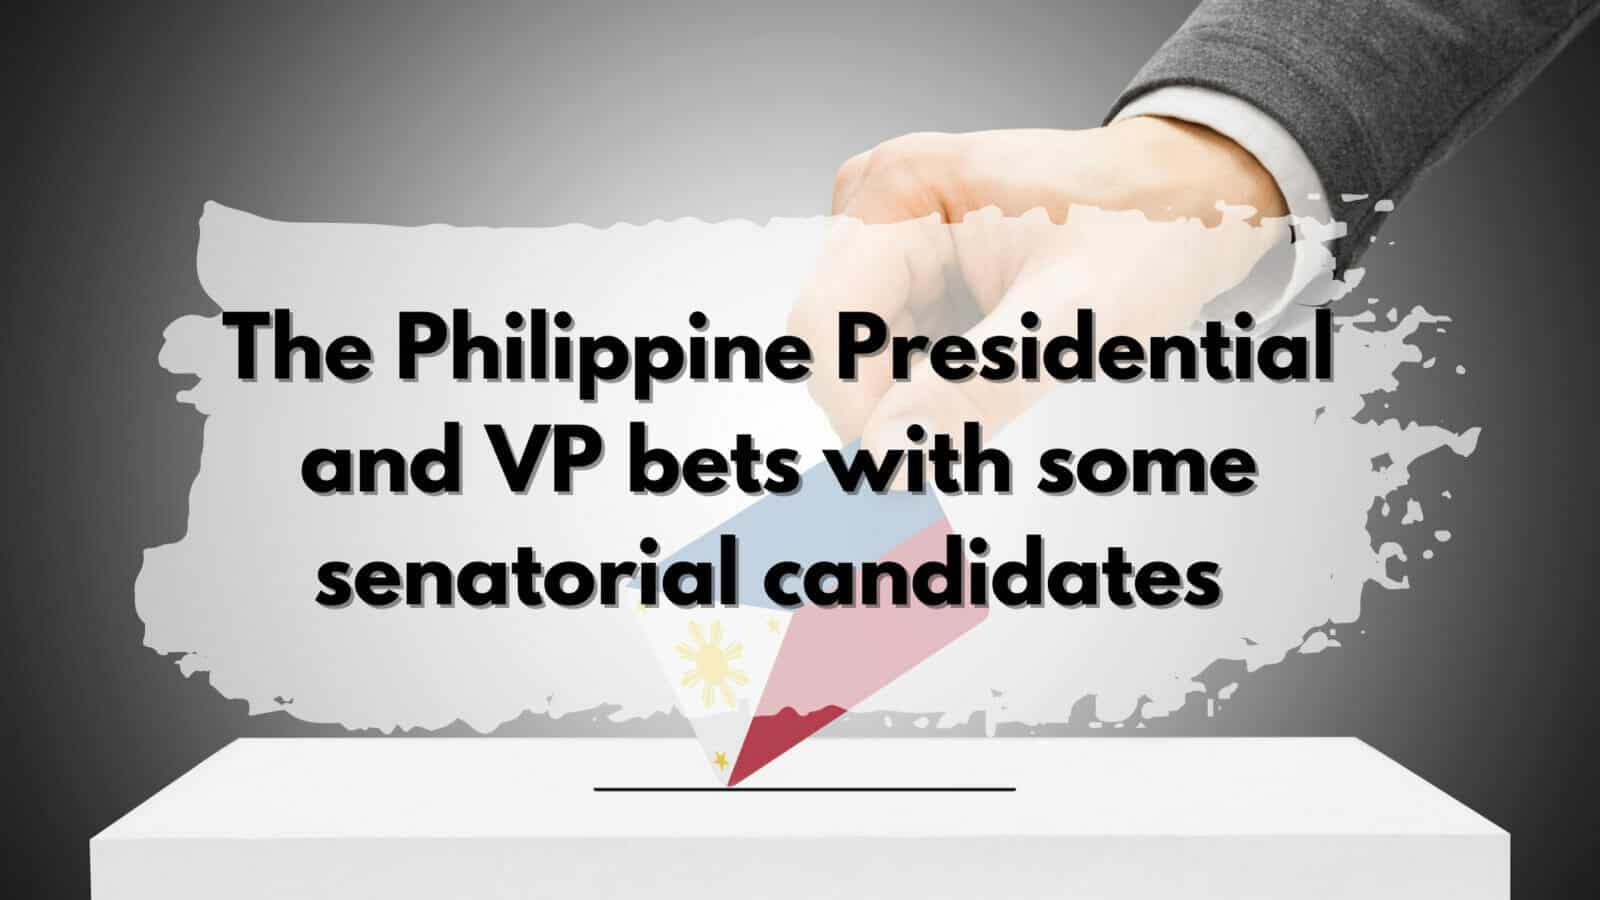 Philippine, presidential, VP, senatorial candidates.